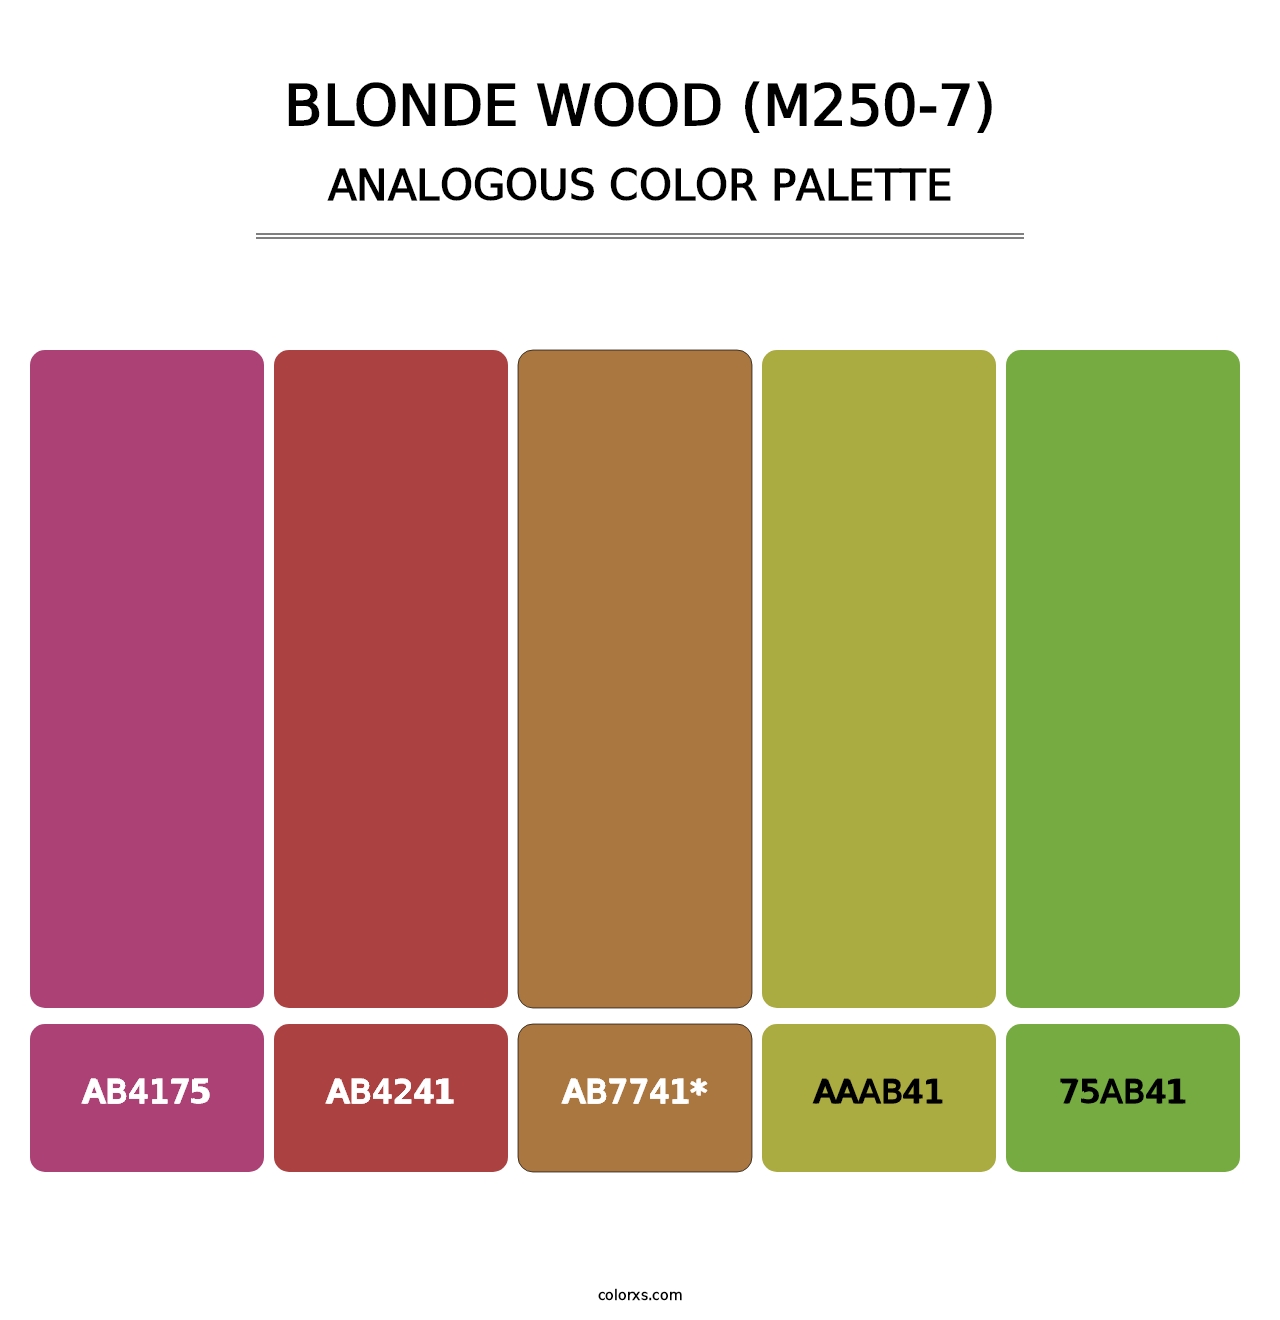 Blonde Wood (M250-7) - Analogous Color Palette